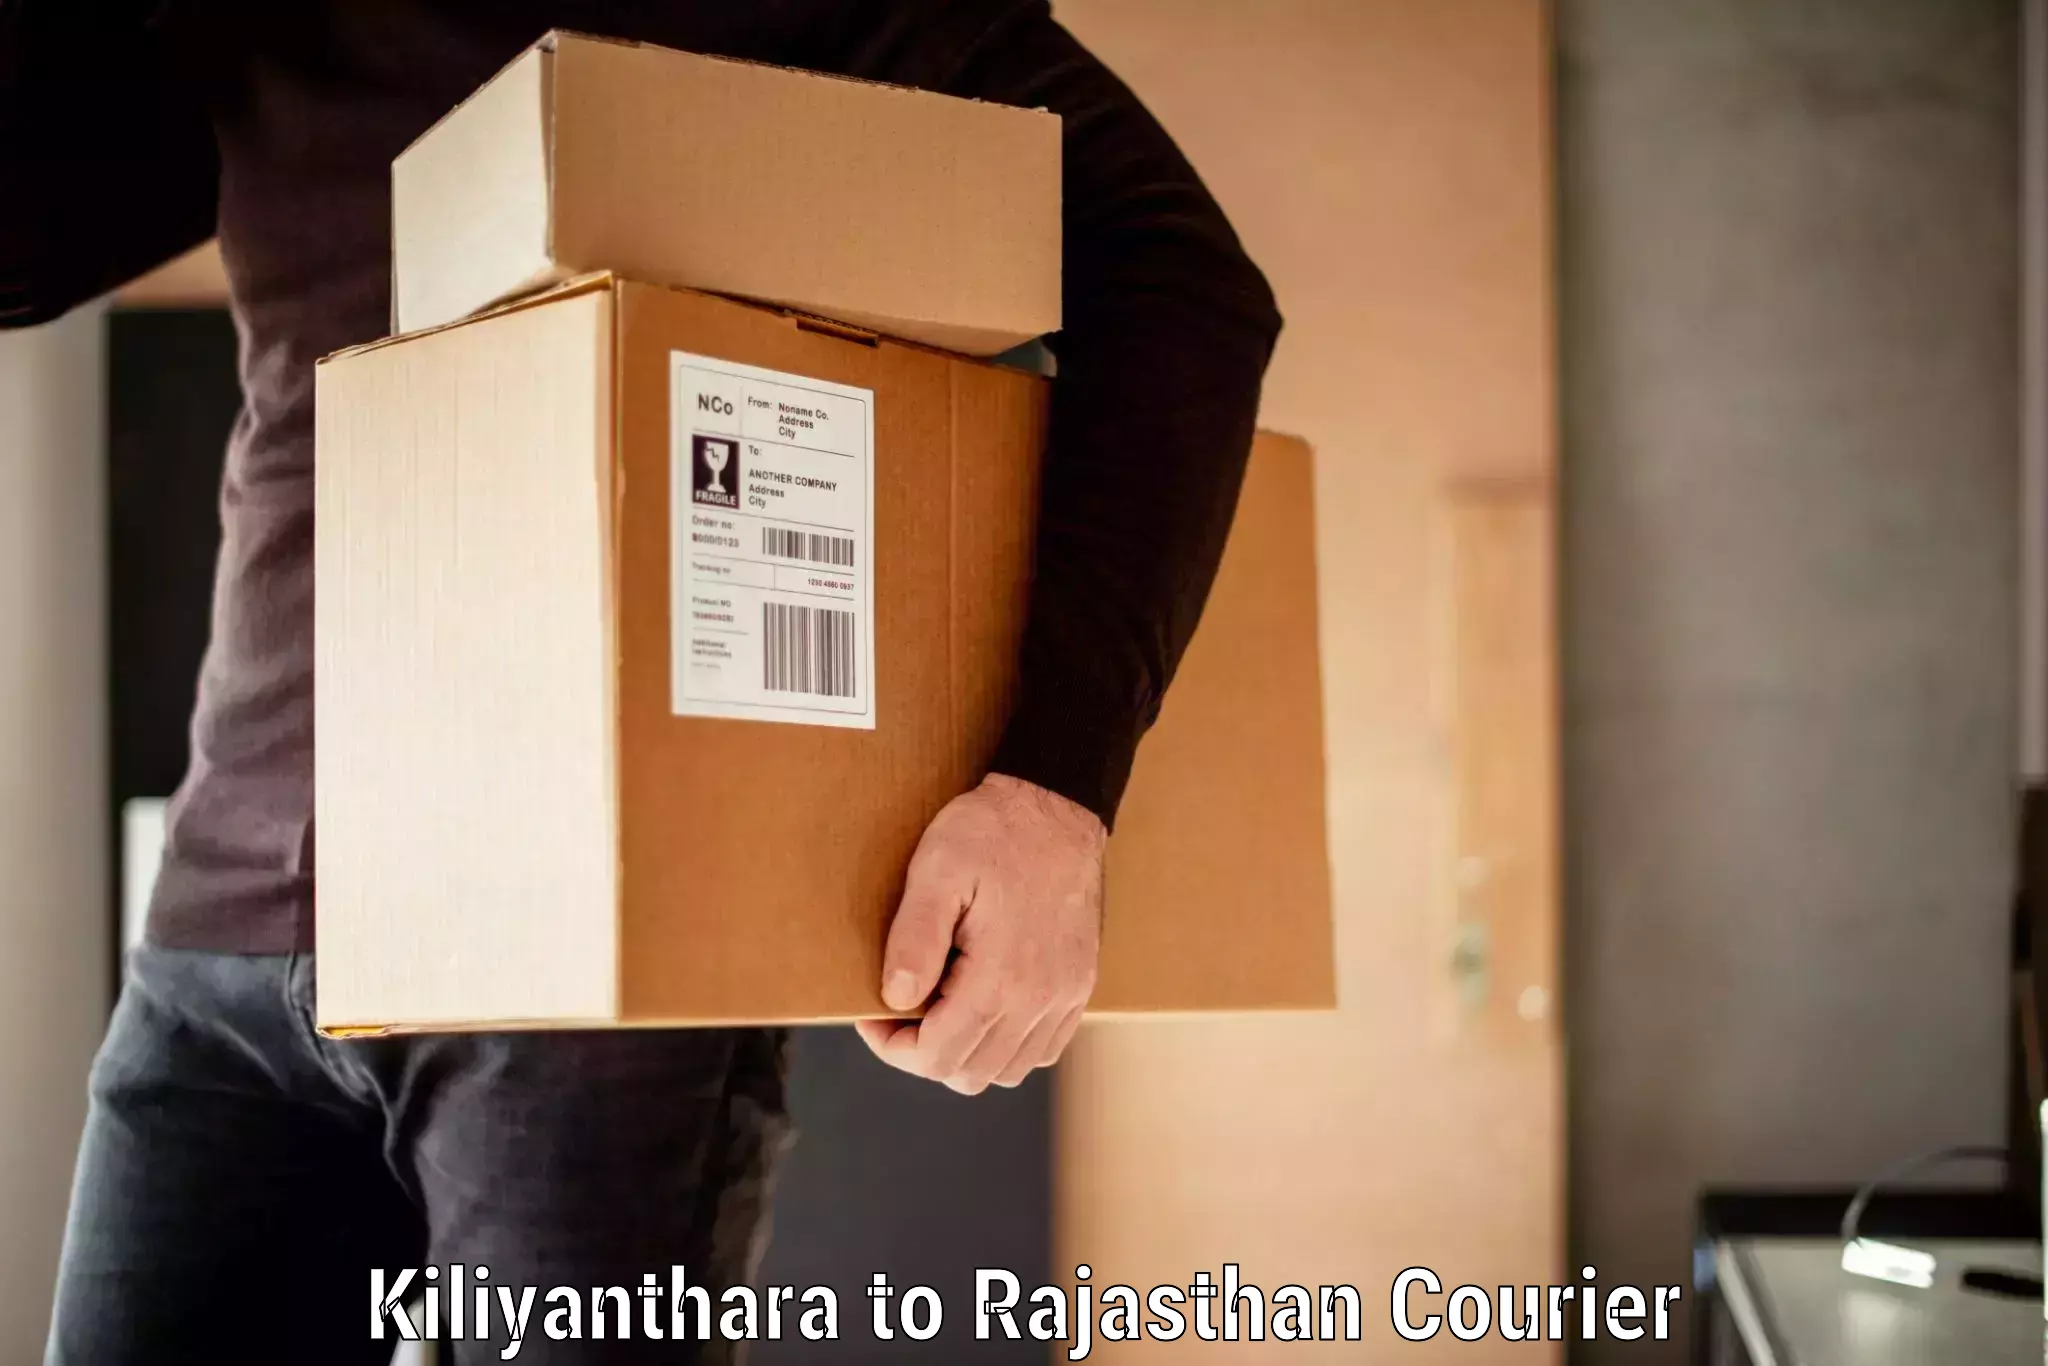 Baggage transport innovation Kiliyanthara to Rajasthan